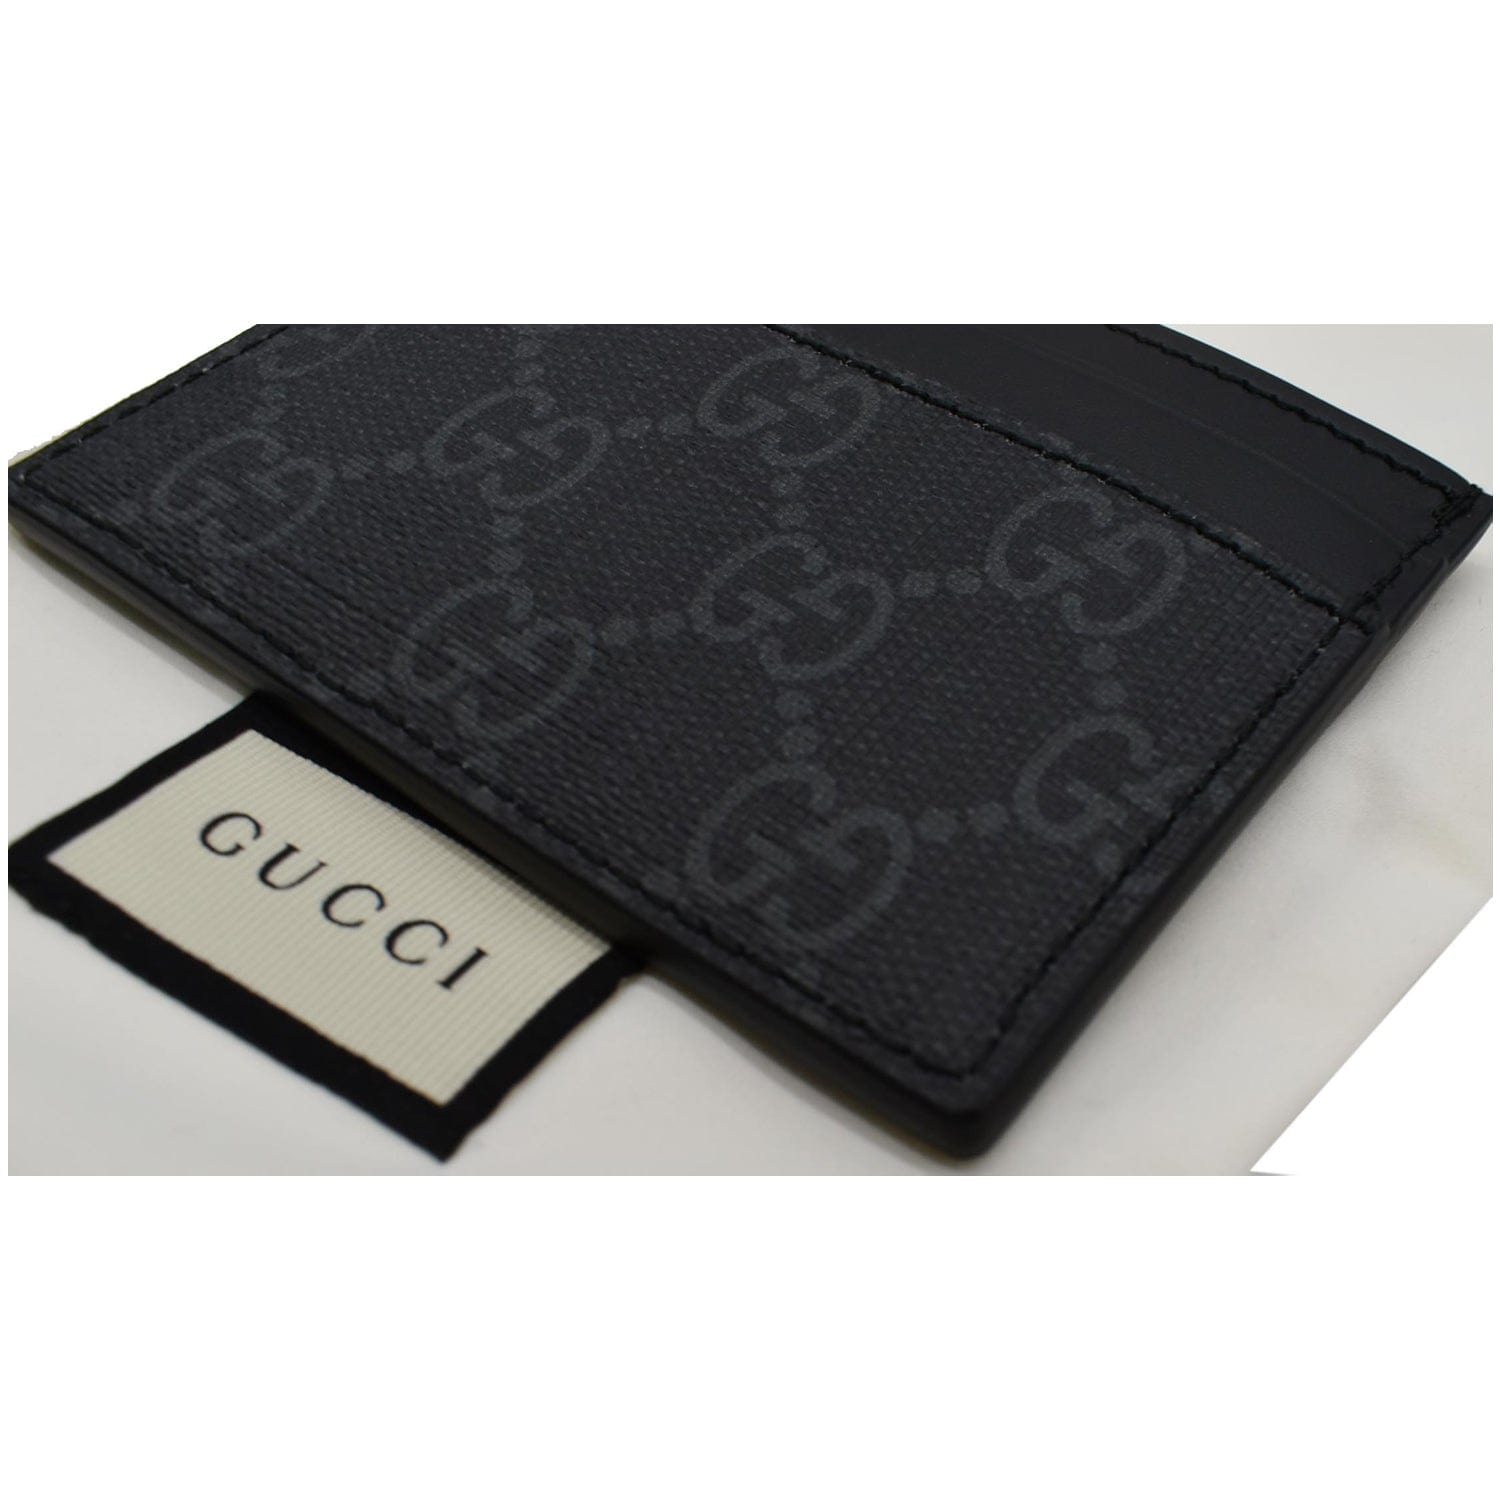 Gucci GG Supreme Card Case - Black